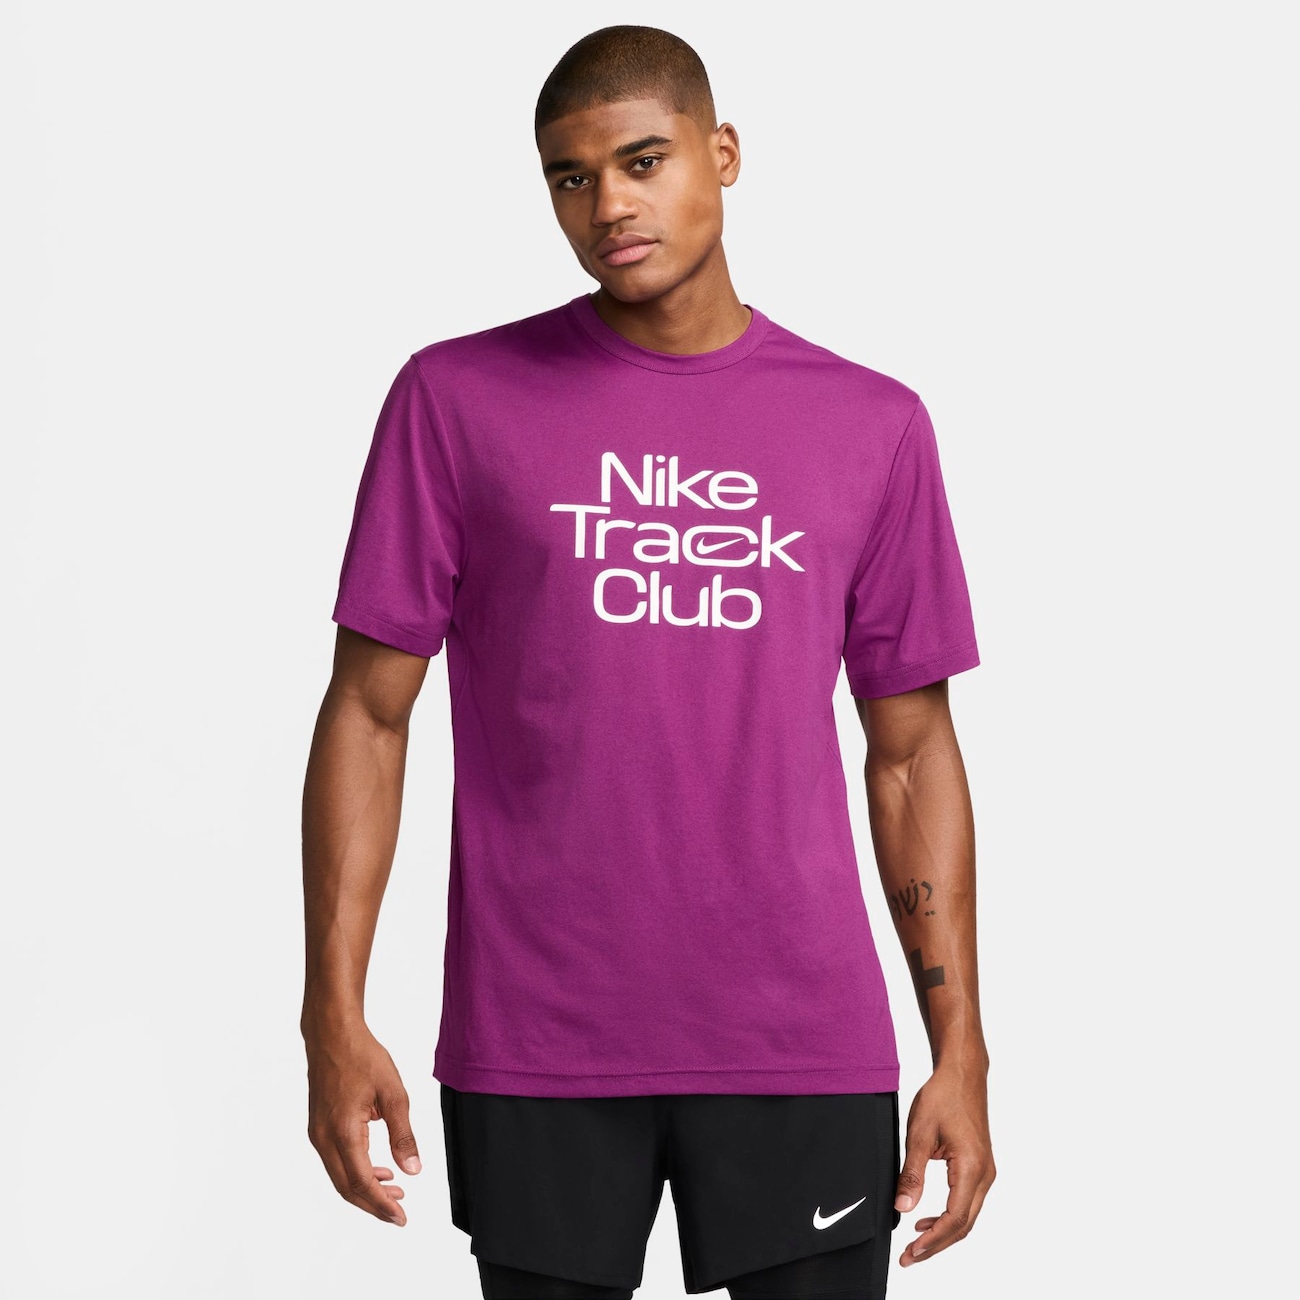 Camiseta Nike Track Club Masculina